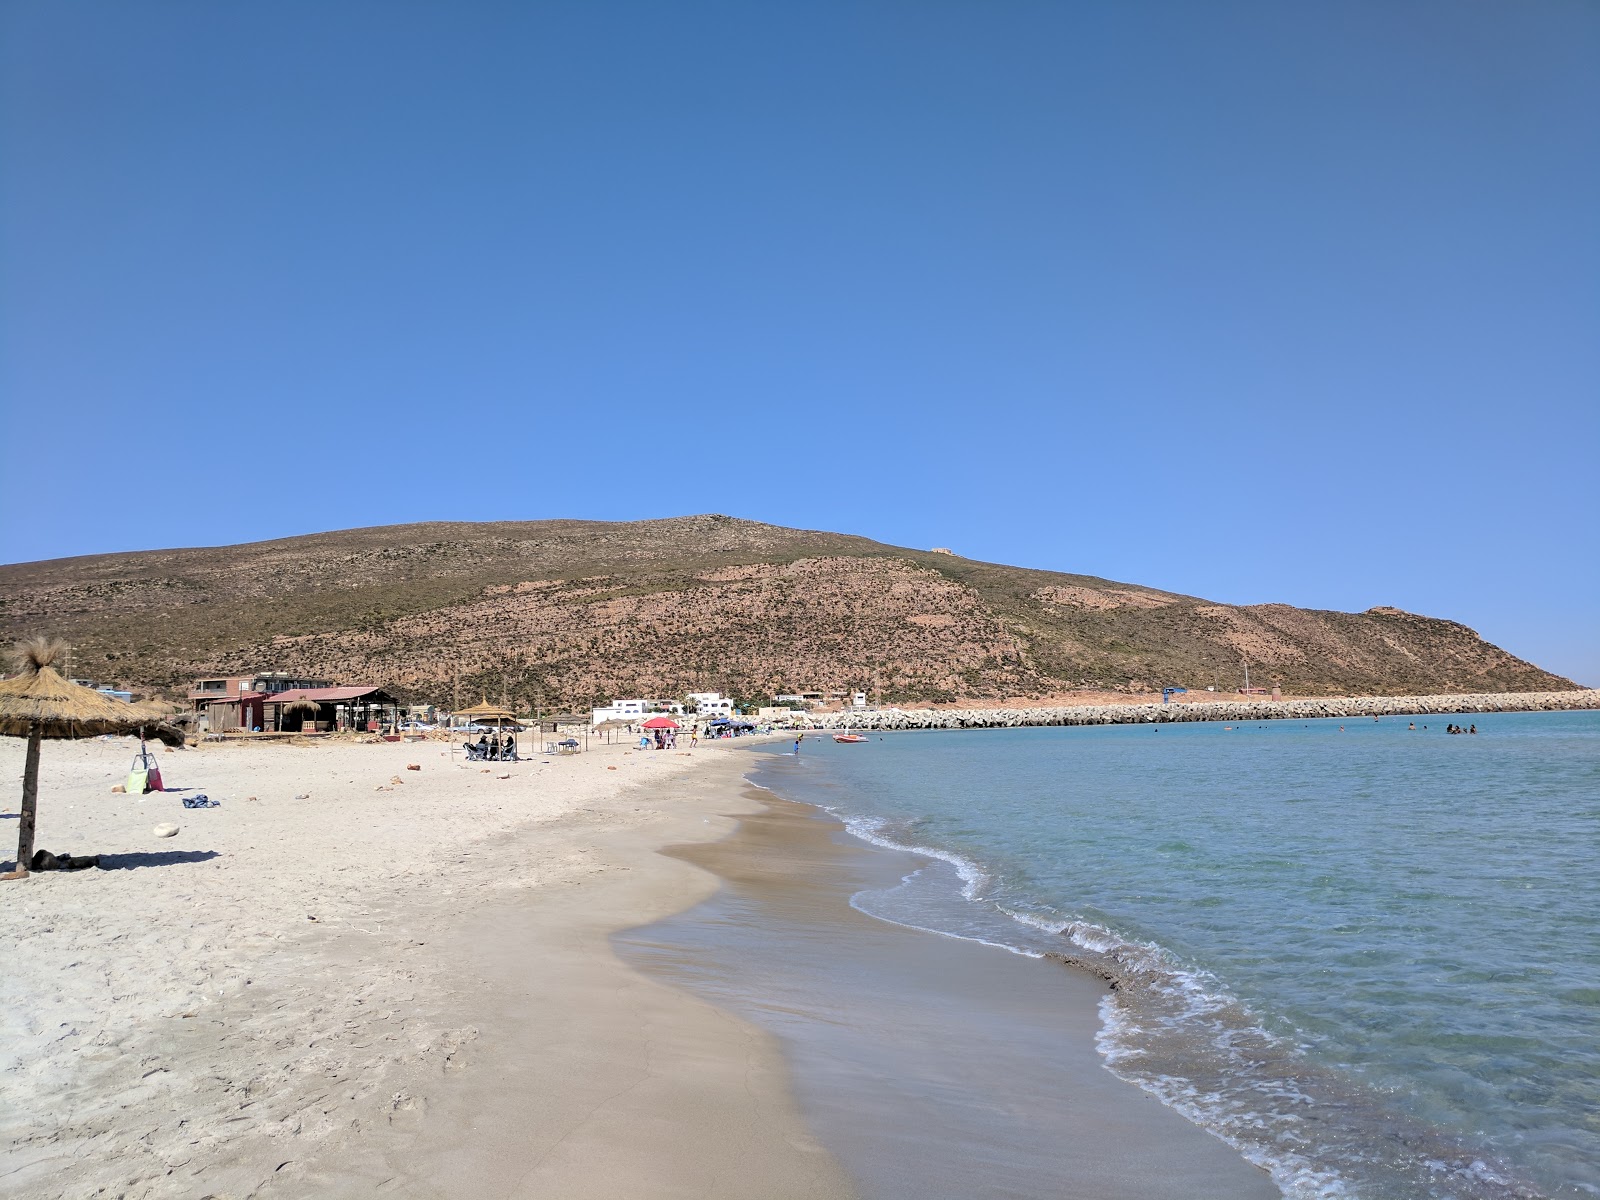 Fotografie cu Eastern Haouaria cu o suprafață de nisip strălucitor